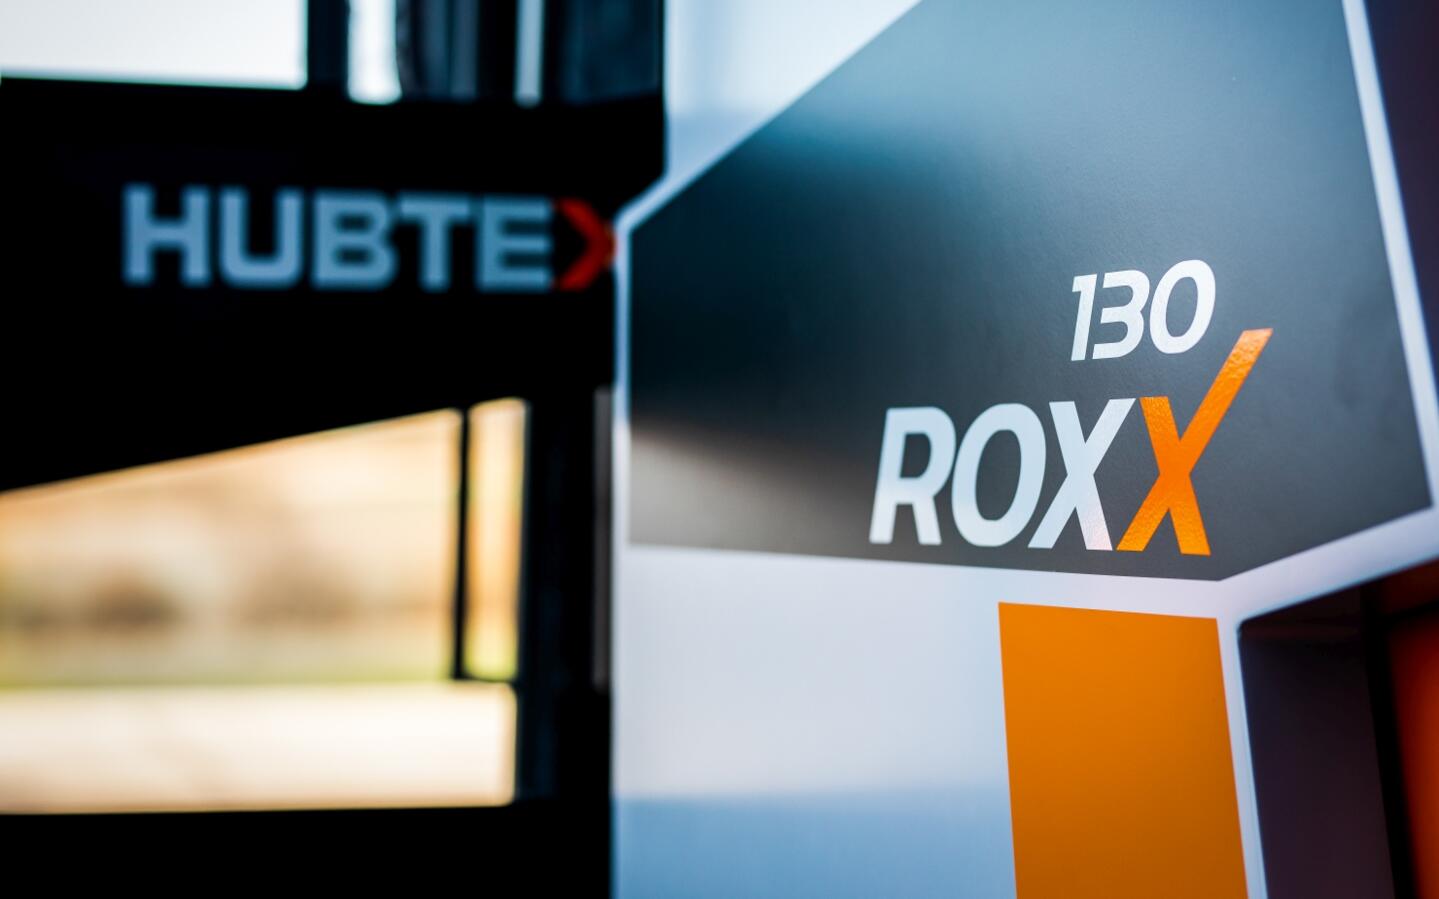 De RoxX transporteert lasten binnen een kleine ruimte.